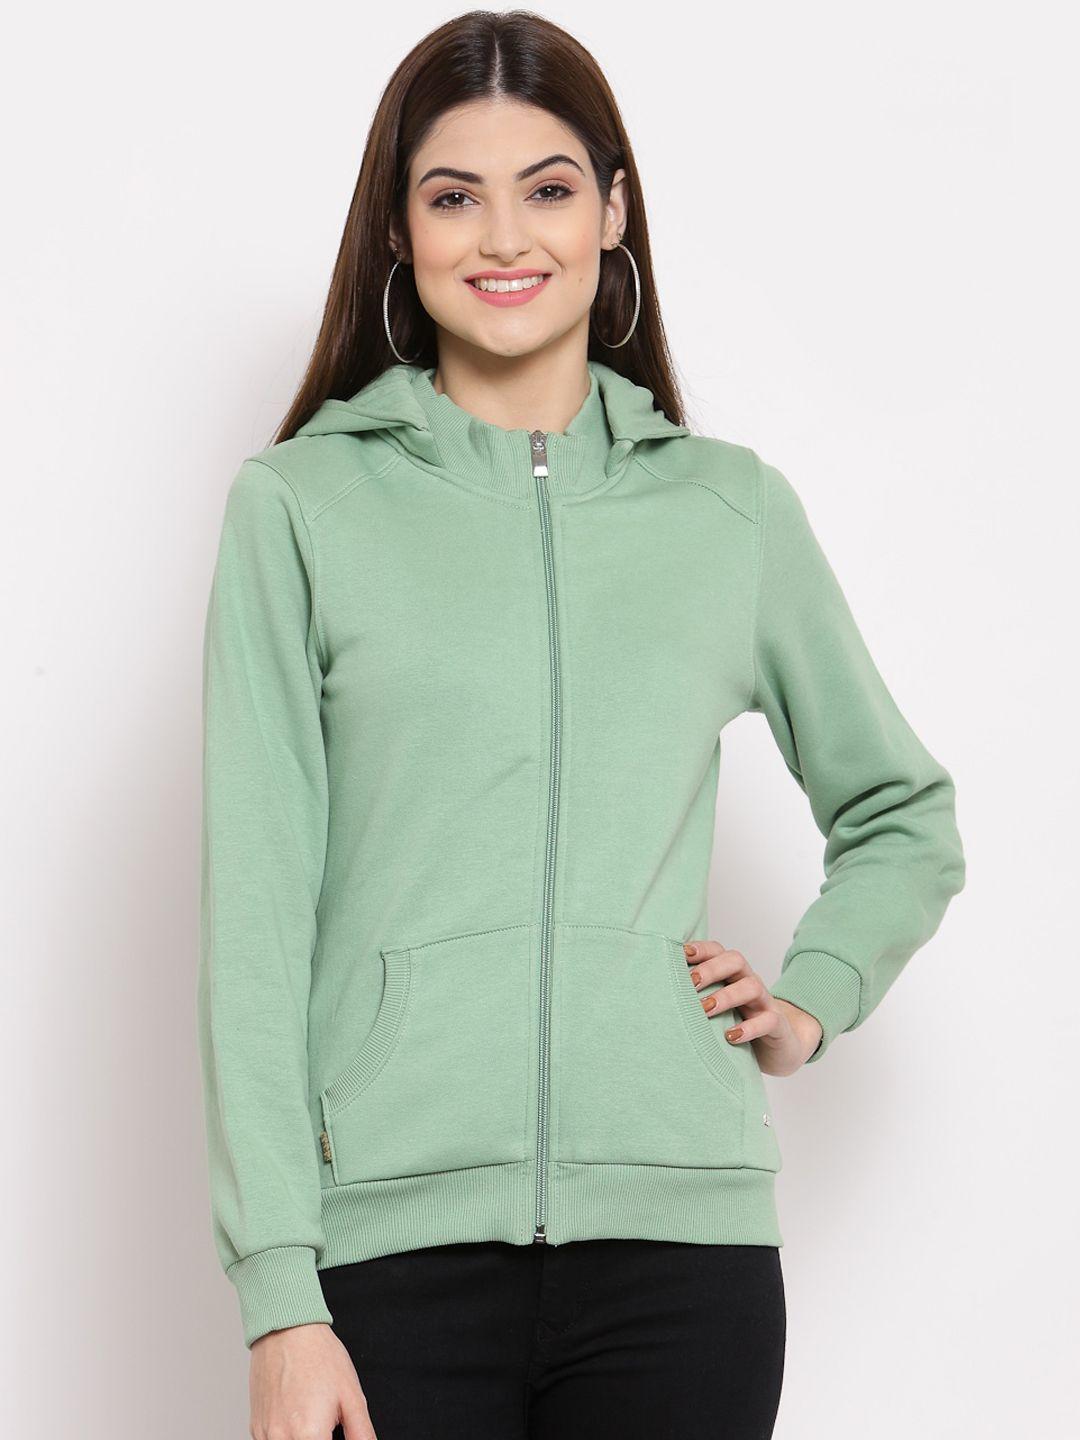 juelle women green hooded fleece sweatshirt